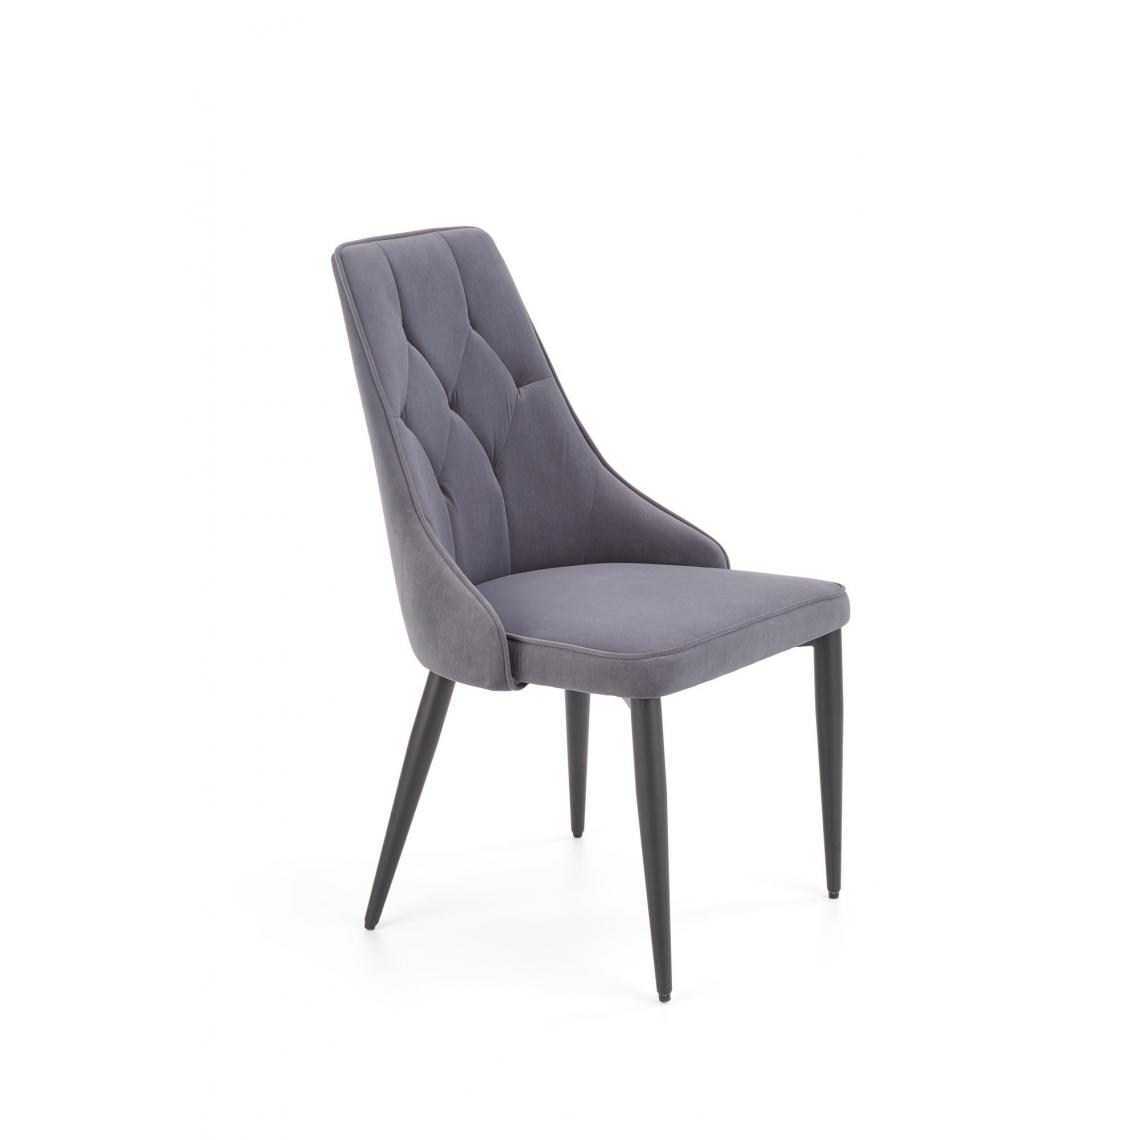 Hucoco - GULIO - Chaise rembourrée style moderne salon/chambre - 90x57x52 - Pieds en acier - Meuble de salle à manger - Gris - Chaises